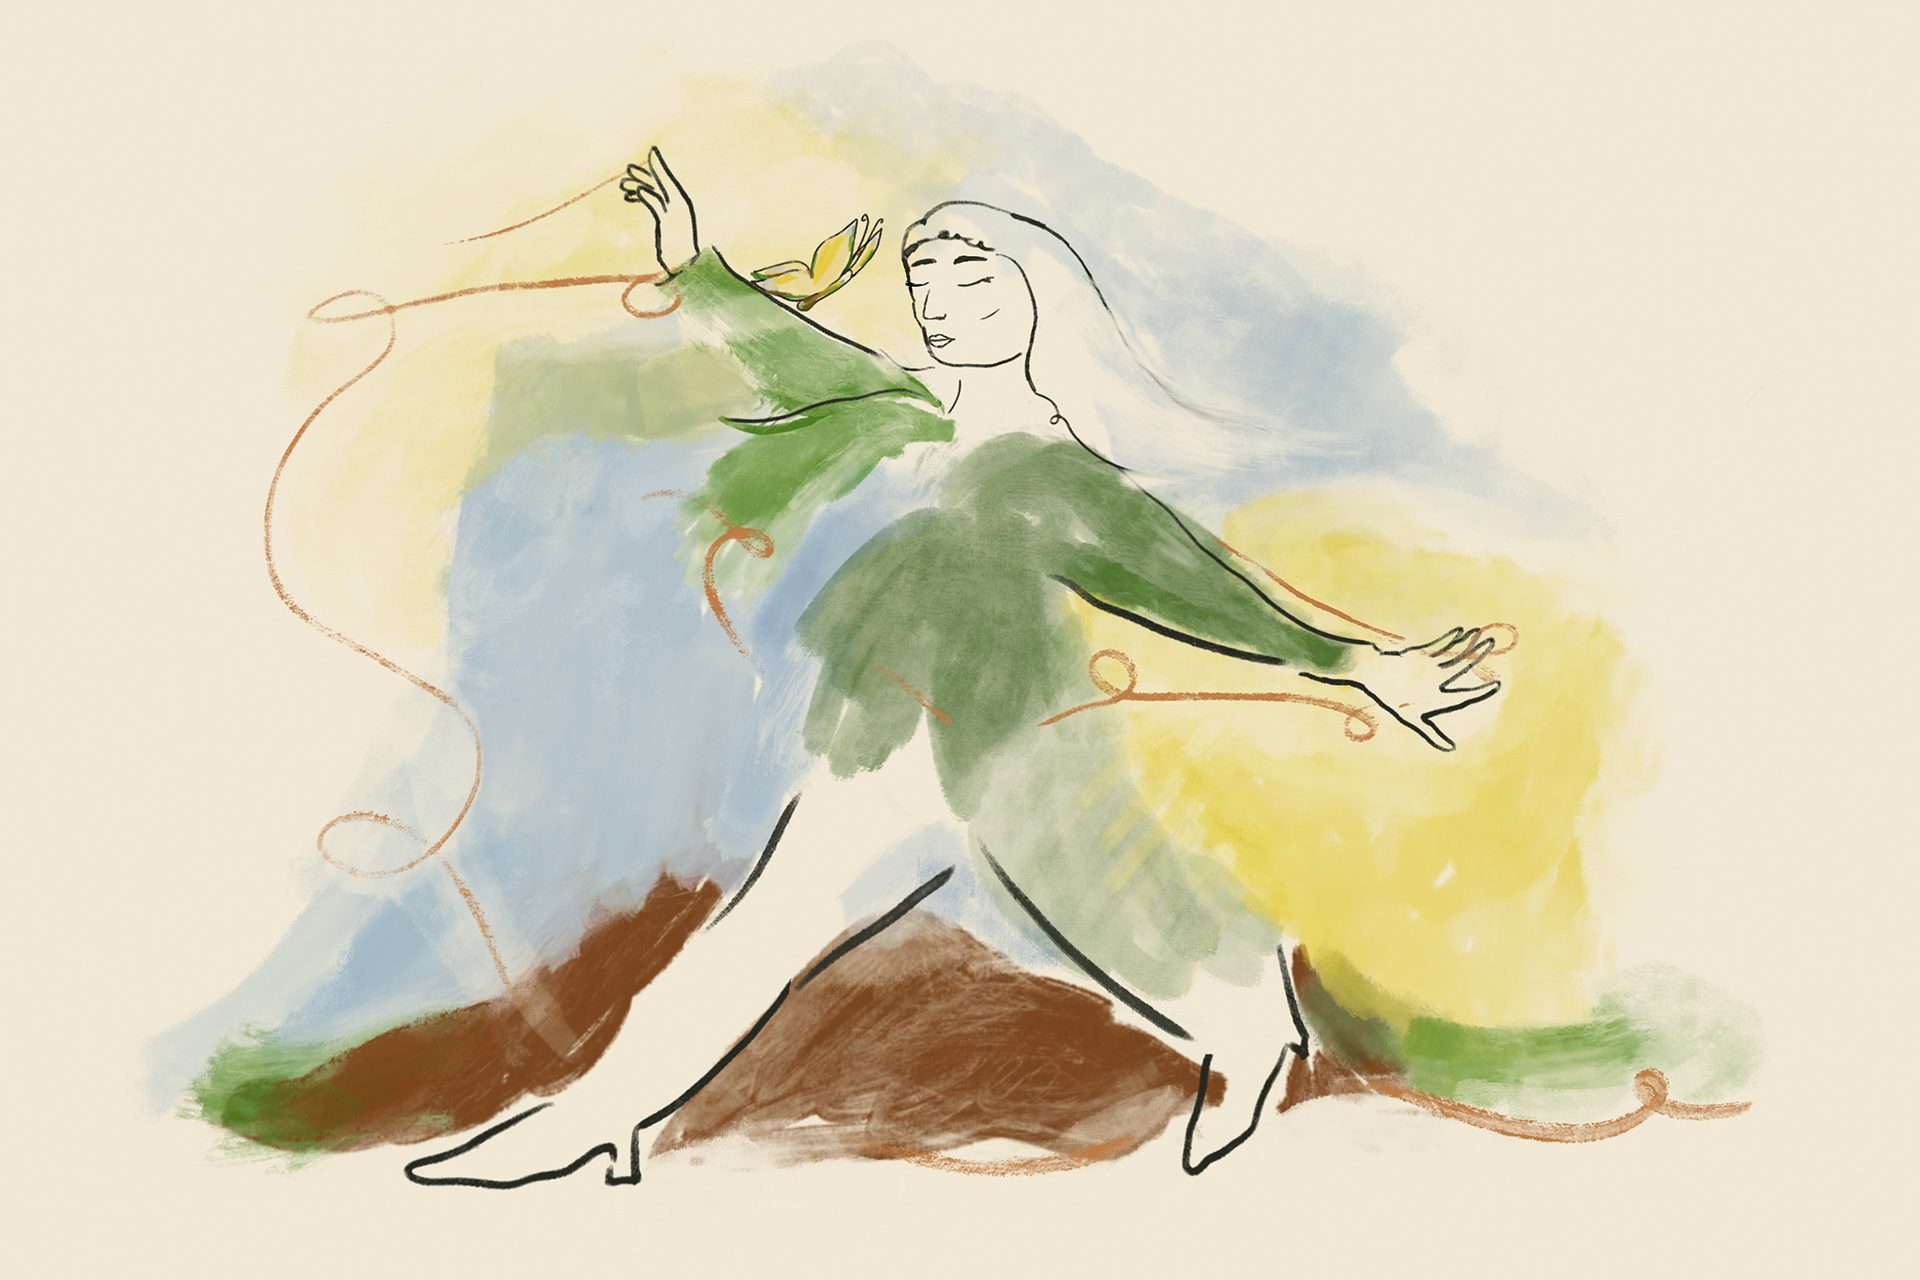 Una mujer con una chaqueta verde y una mariposa está bailando